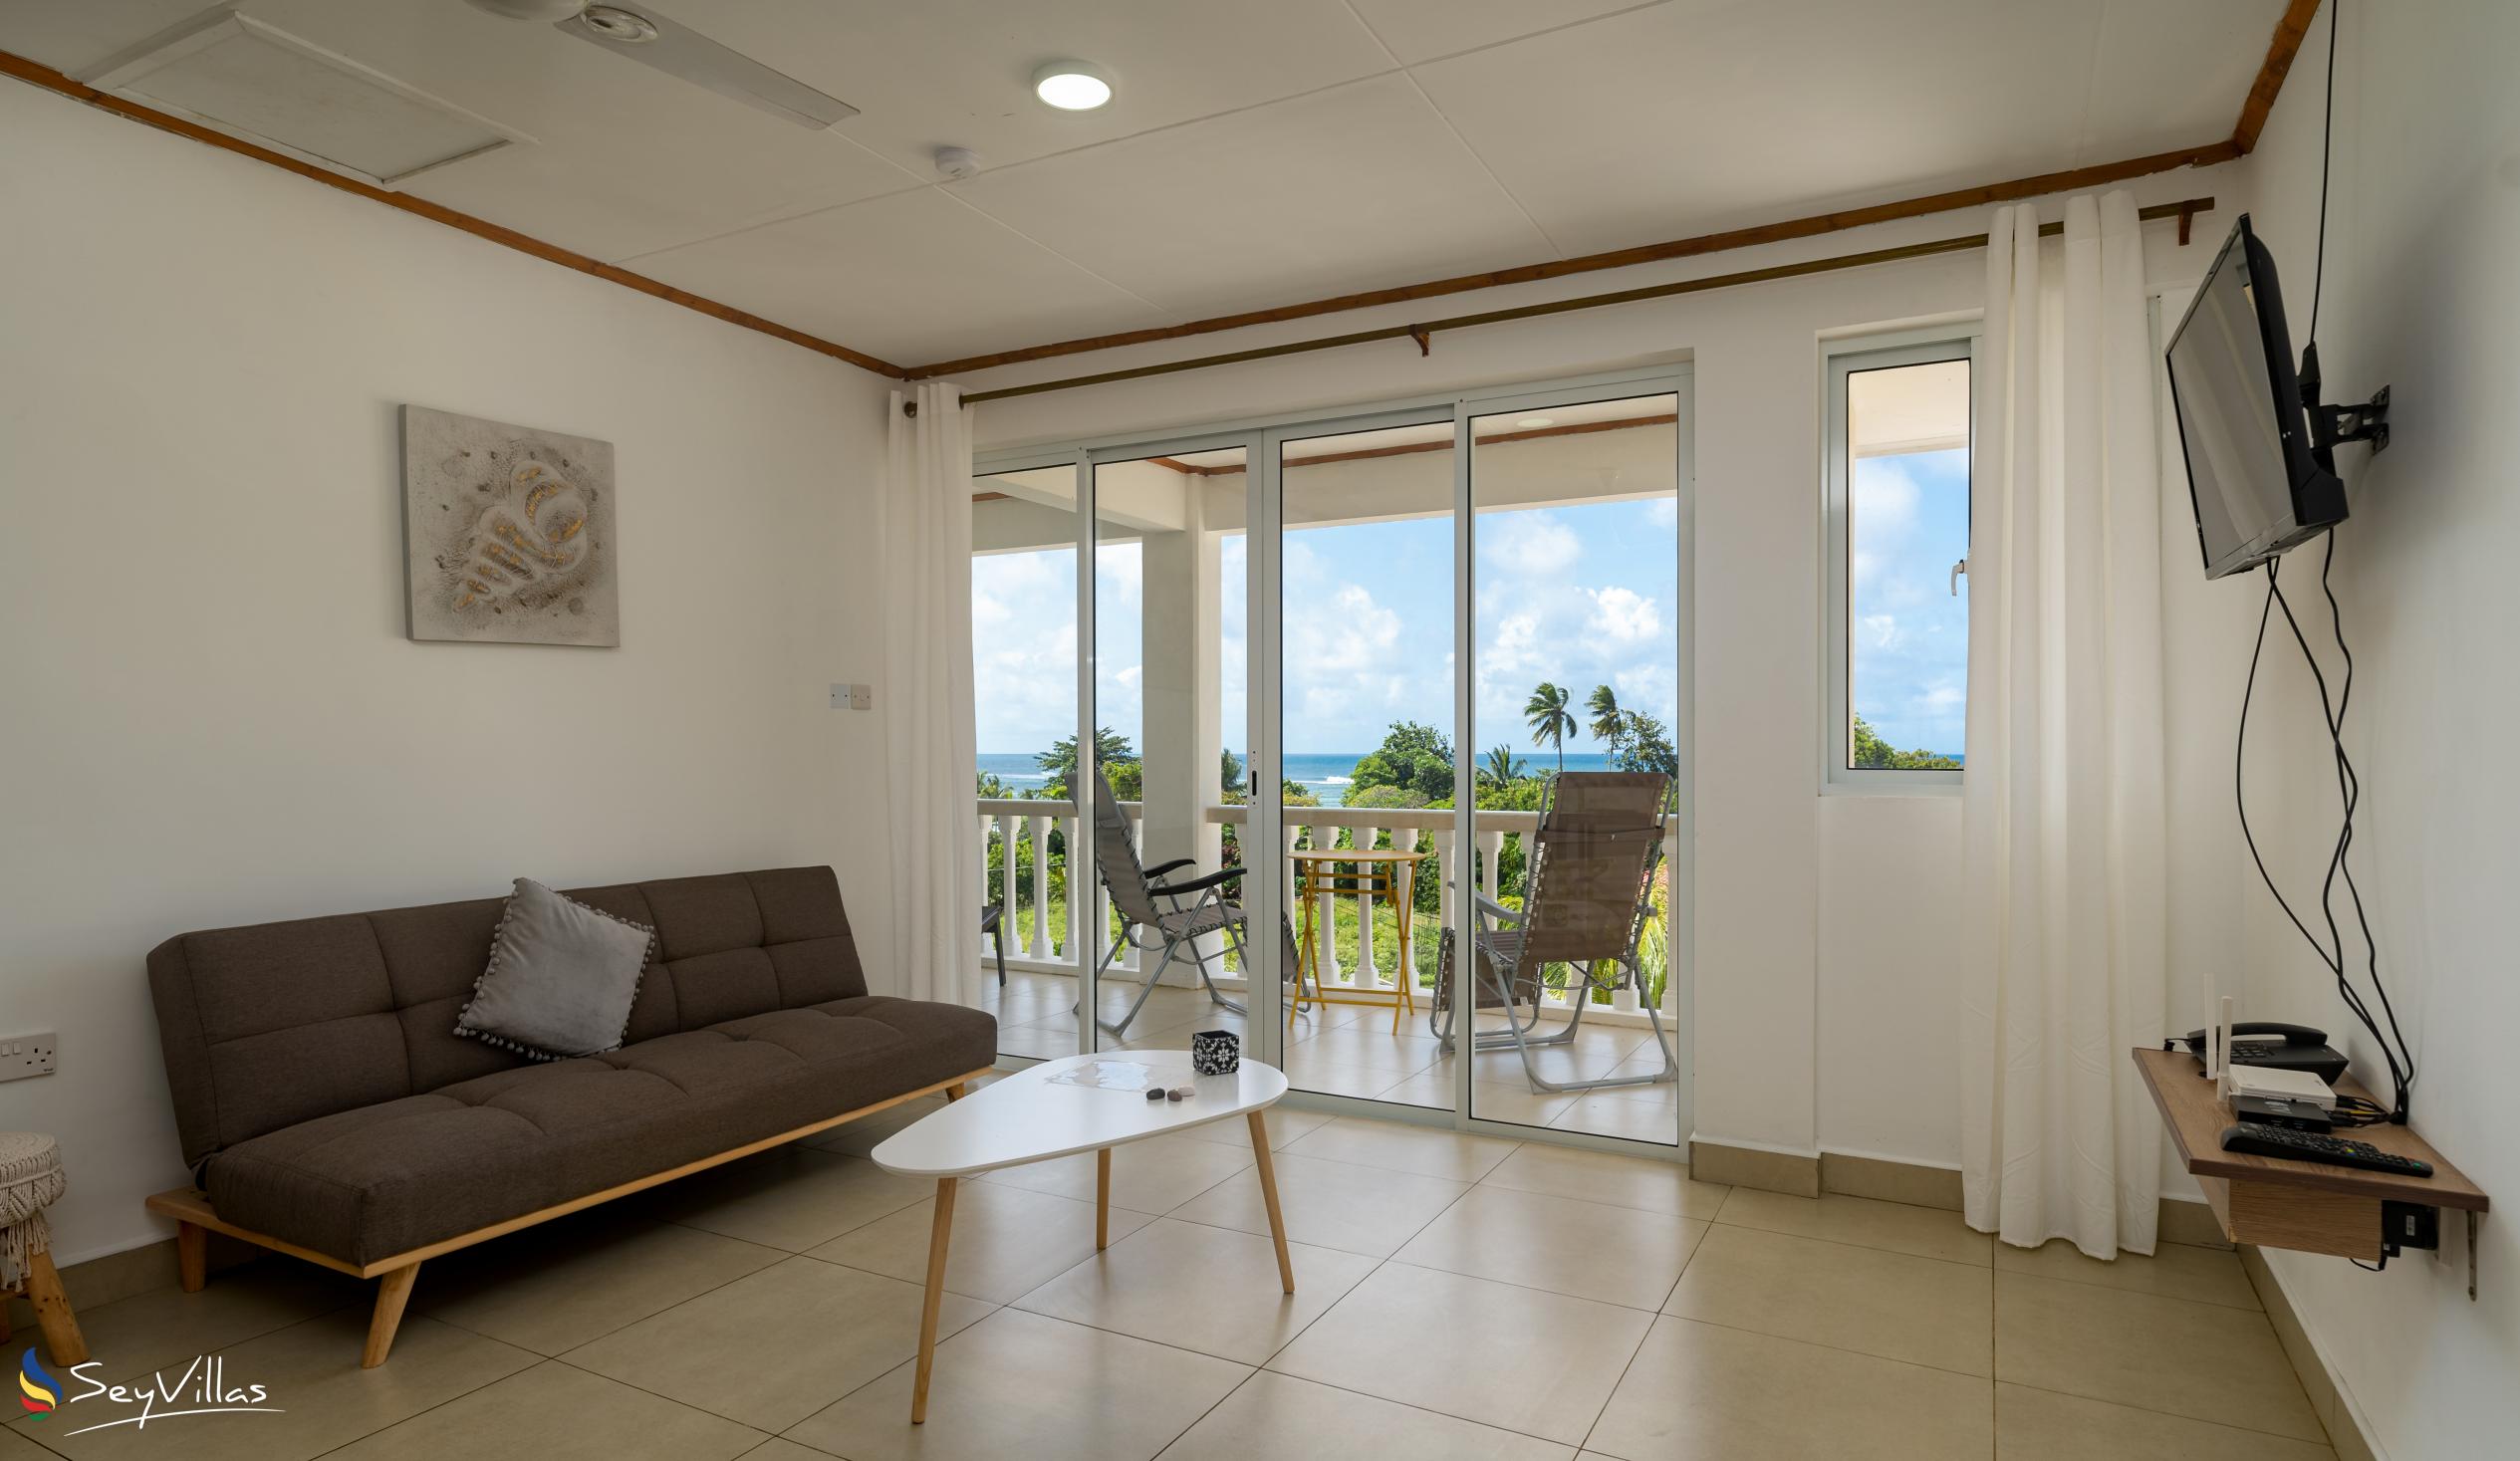 Photo 71: Cap Confort - 1-Bedroom Apartment - Mahé (Seychelles)